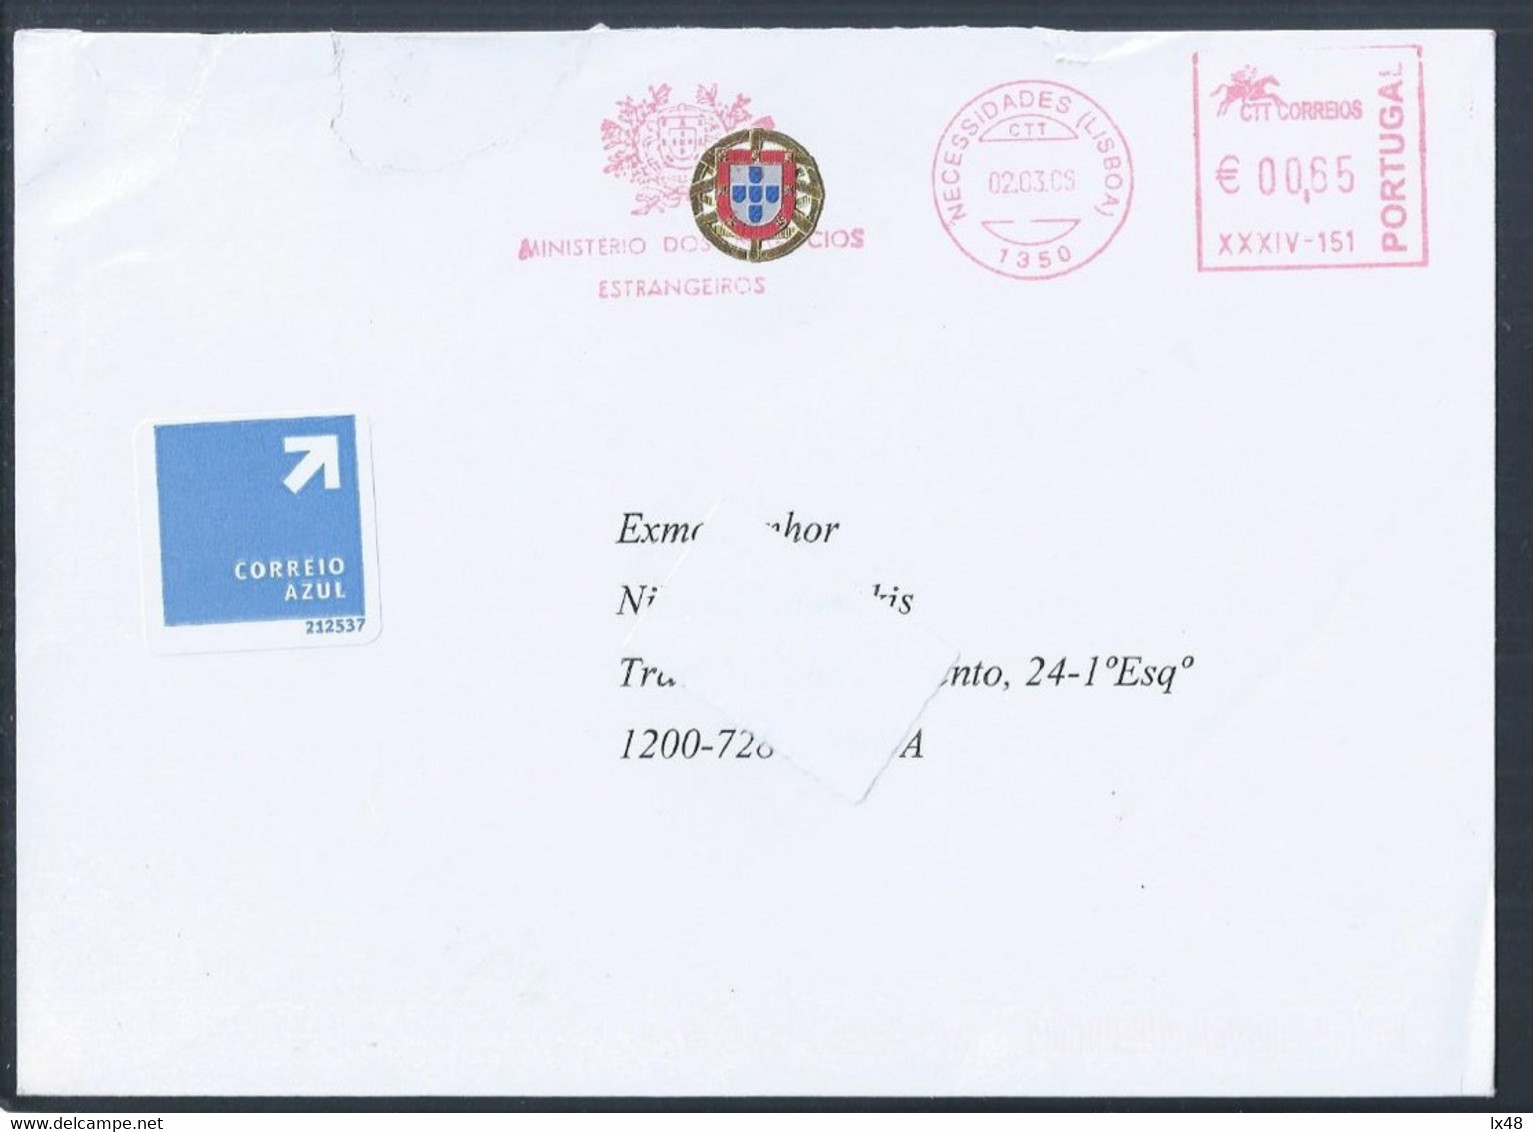 Carta De Correio Azul Com Franquia Mecânica Do Ministério Dos Negócios Estrangeiros, Lisboa. Escudo Da República. - Cartas & Documentos